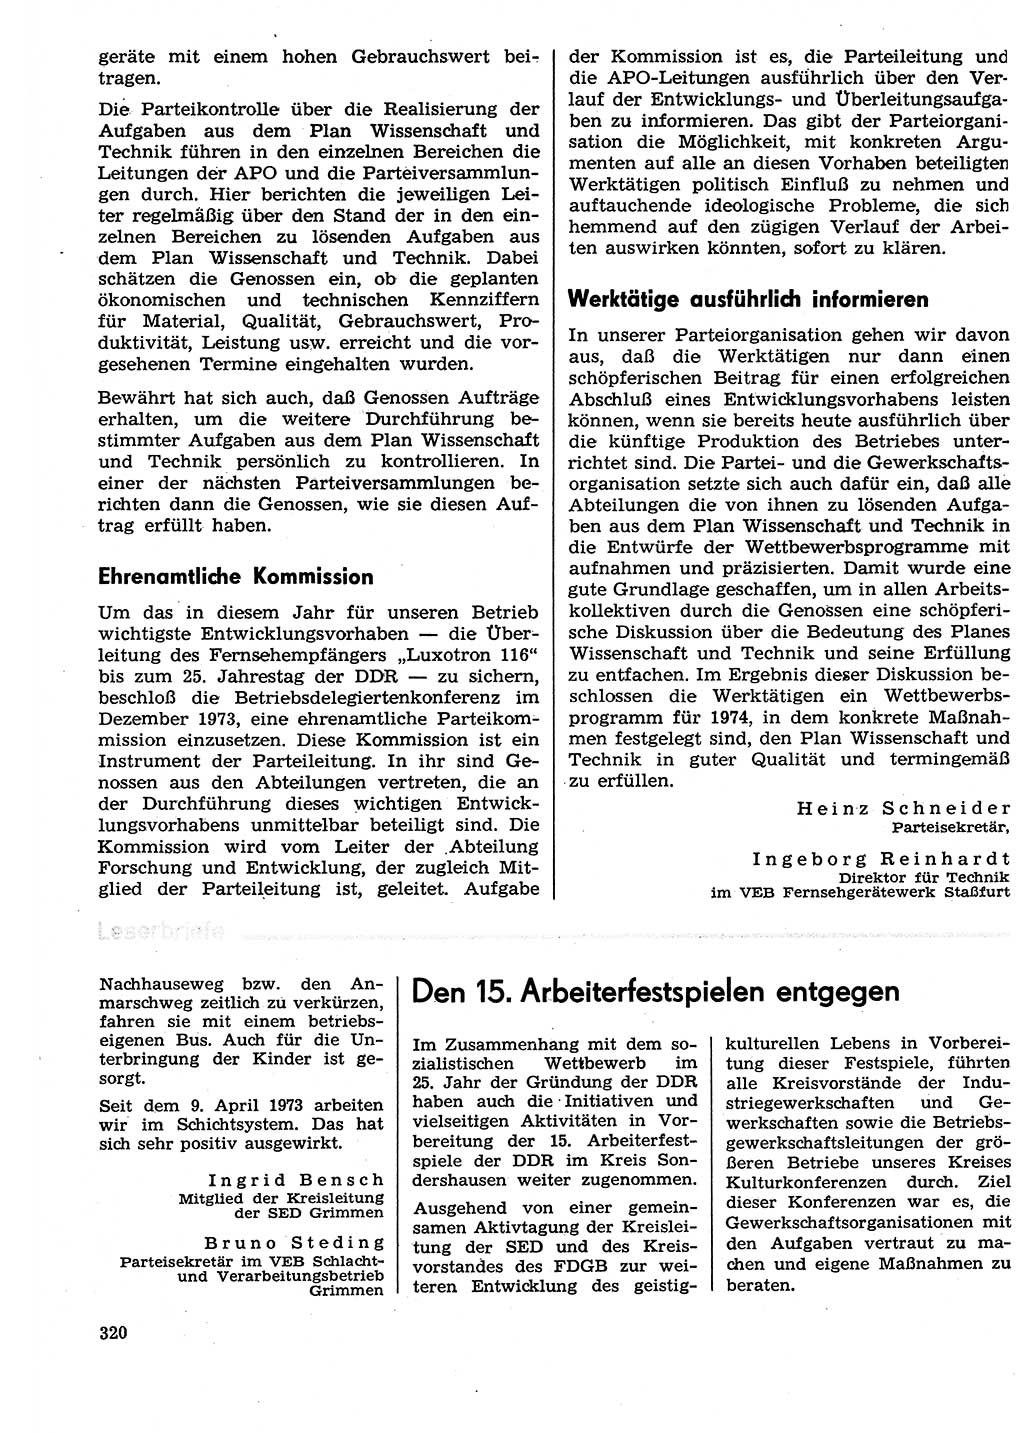 Neuer Weg (NW), Organ des Zentralkomitees (ZK) der SED (Sozialistische Einheitspartei Deutschlands) für Fragen des Parteilebens, 29. Jahrgang [Deutsche Demokratische Republik (DDR)] 1974, Seite 320 (NW ZK SED DDR 1974, S. 320)